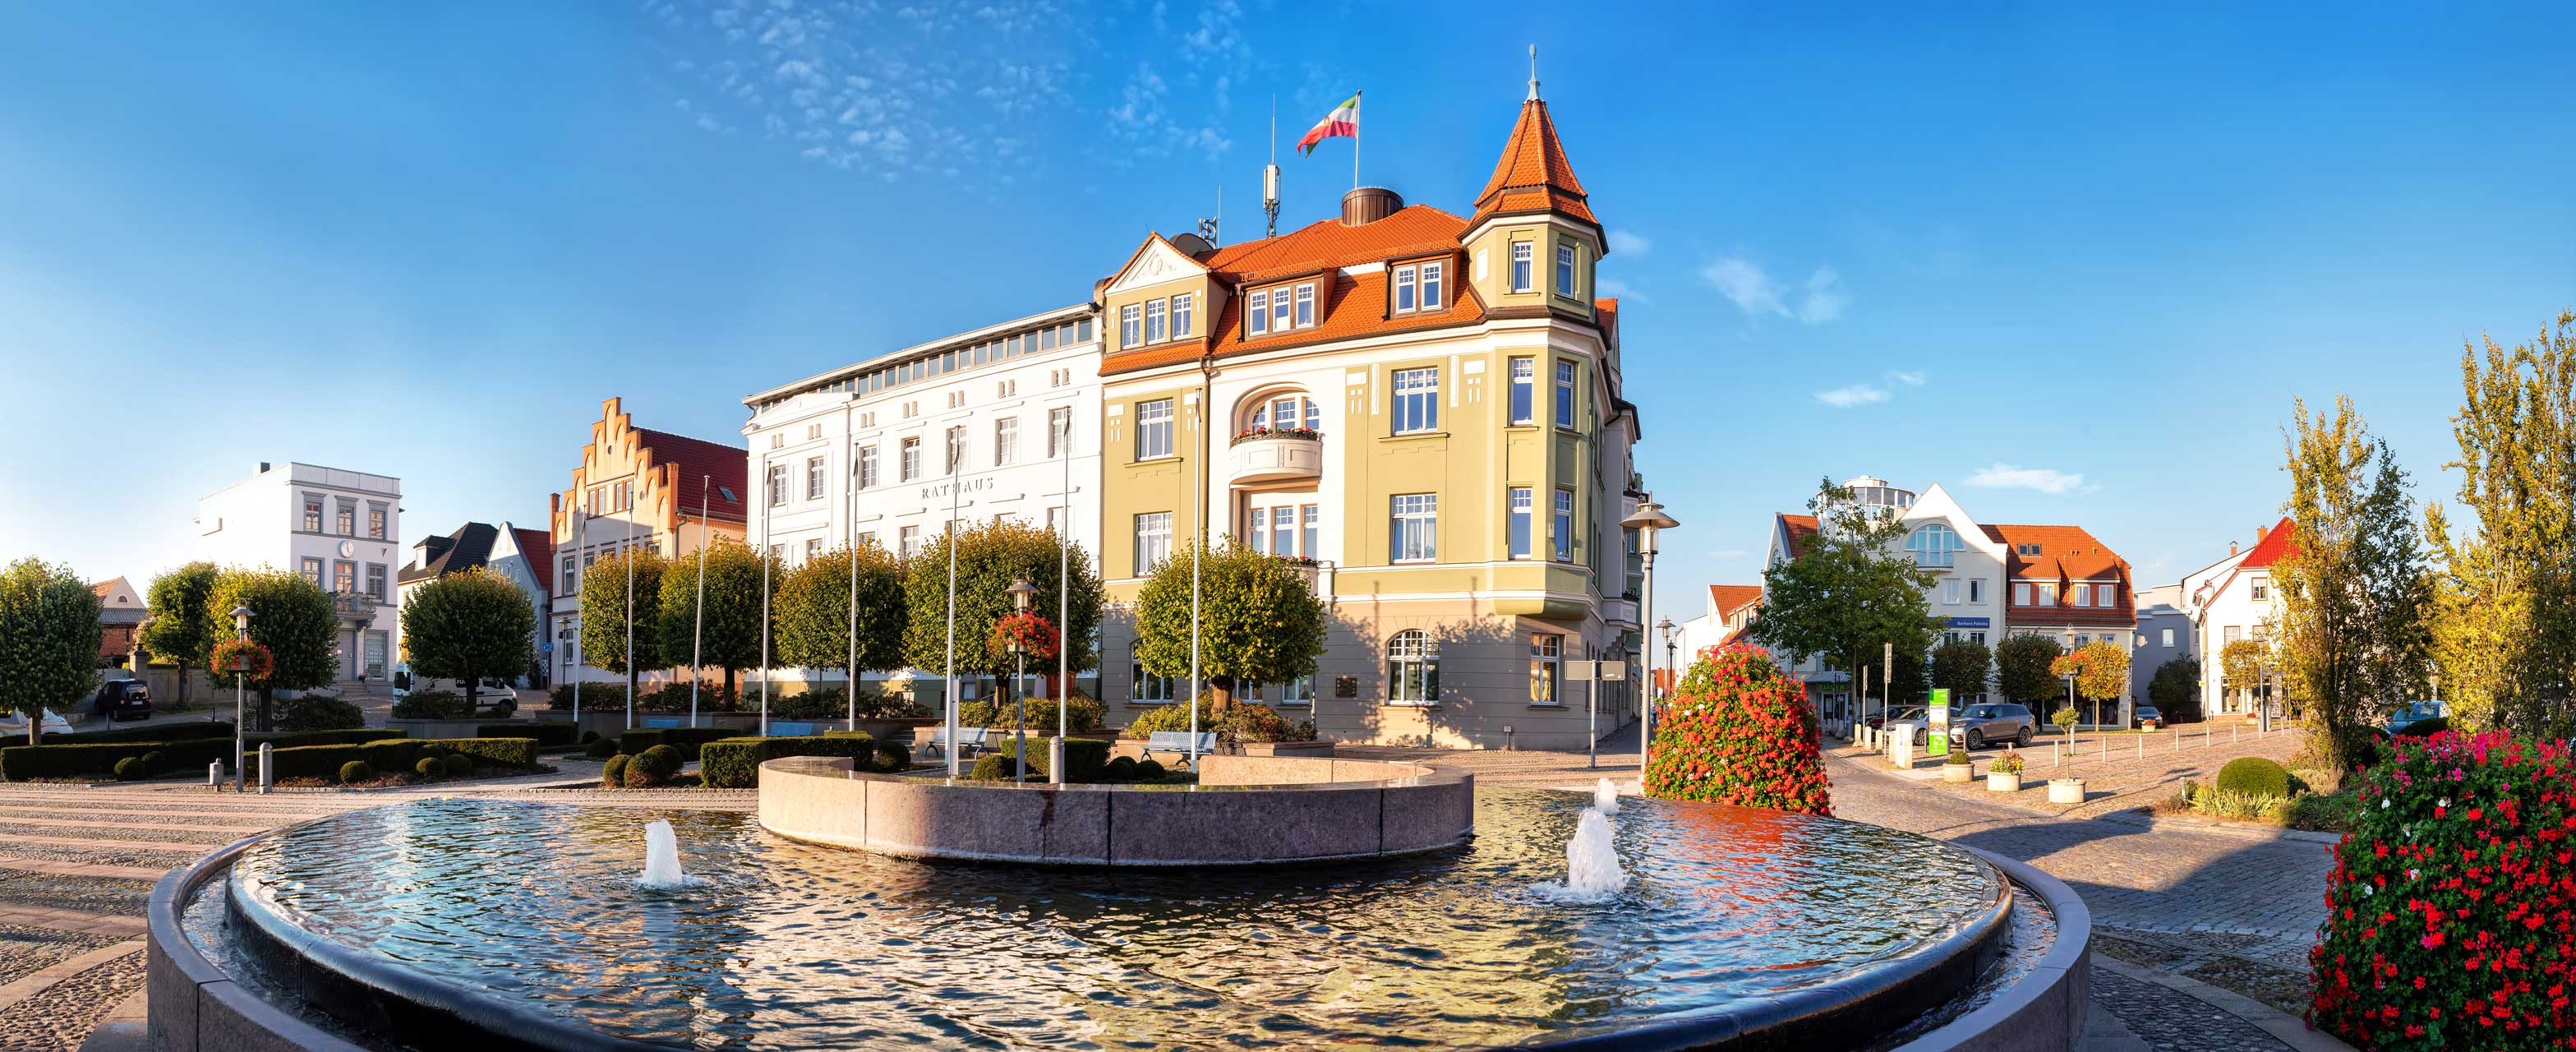 Rathaus mit Brunnen in Bergen